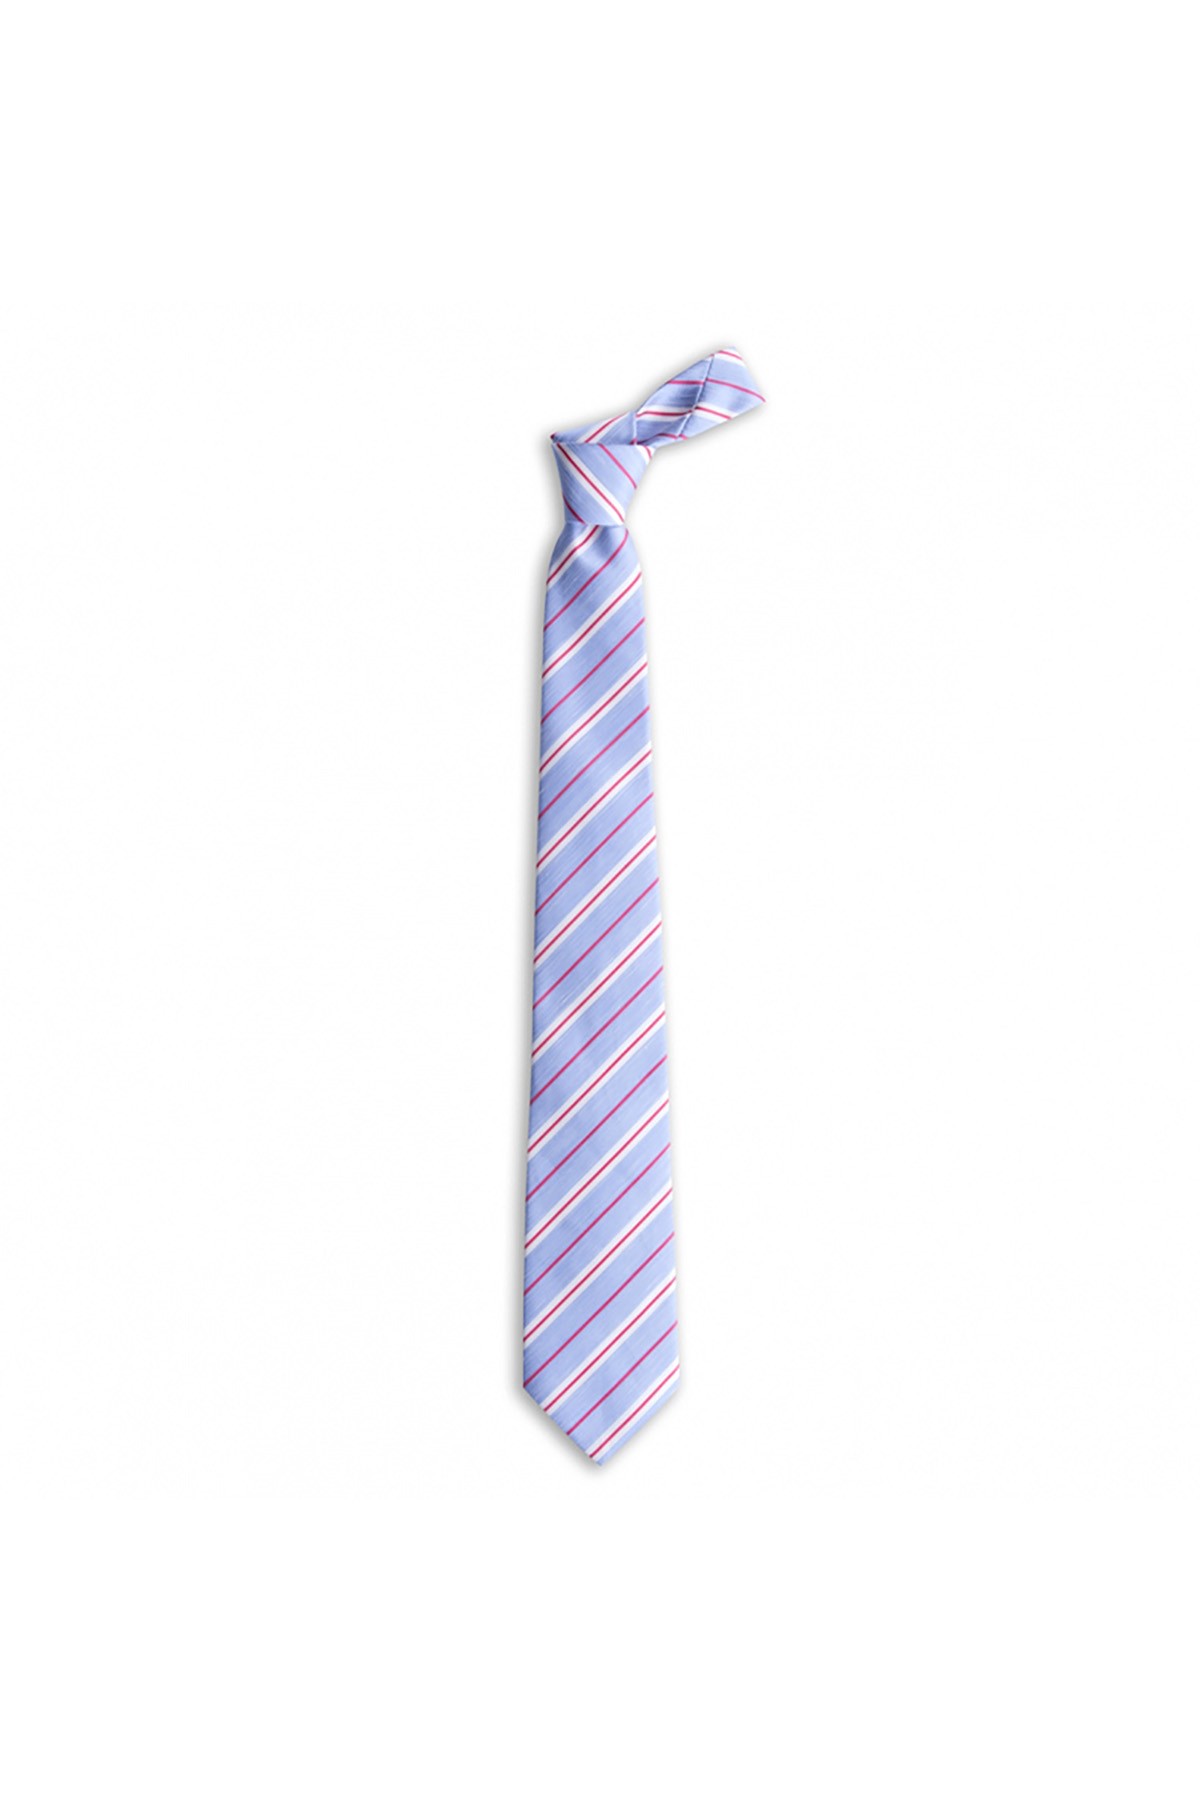 Klasik çizgili 8 cm genişliğinde keten ve ipek karışımlı kravat - Mavi